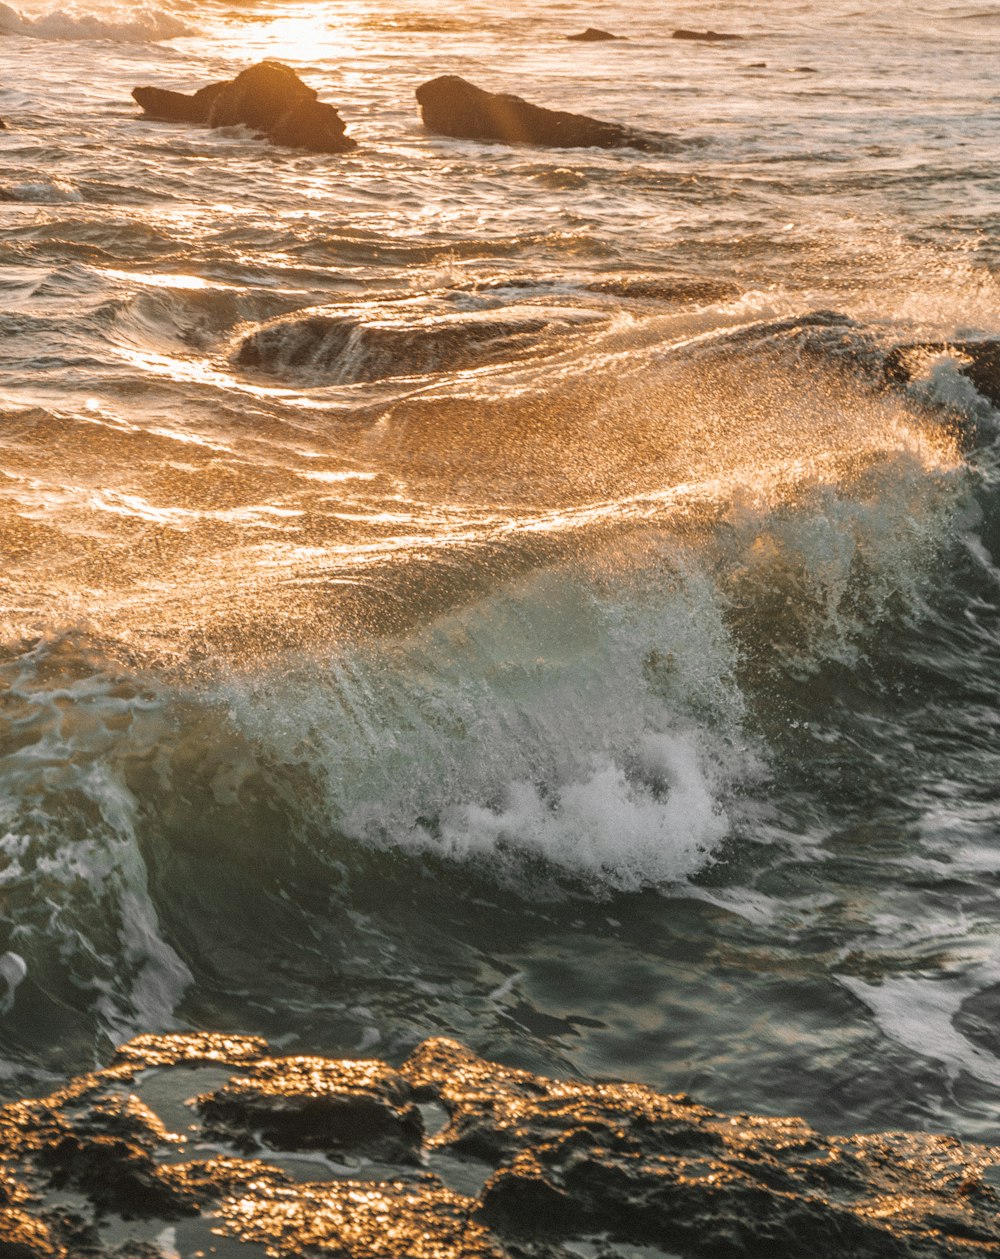 ondas de água atingindo rochas marrons durante o dia